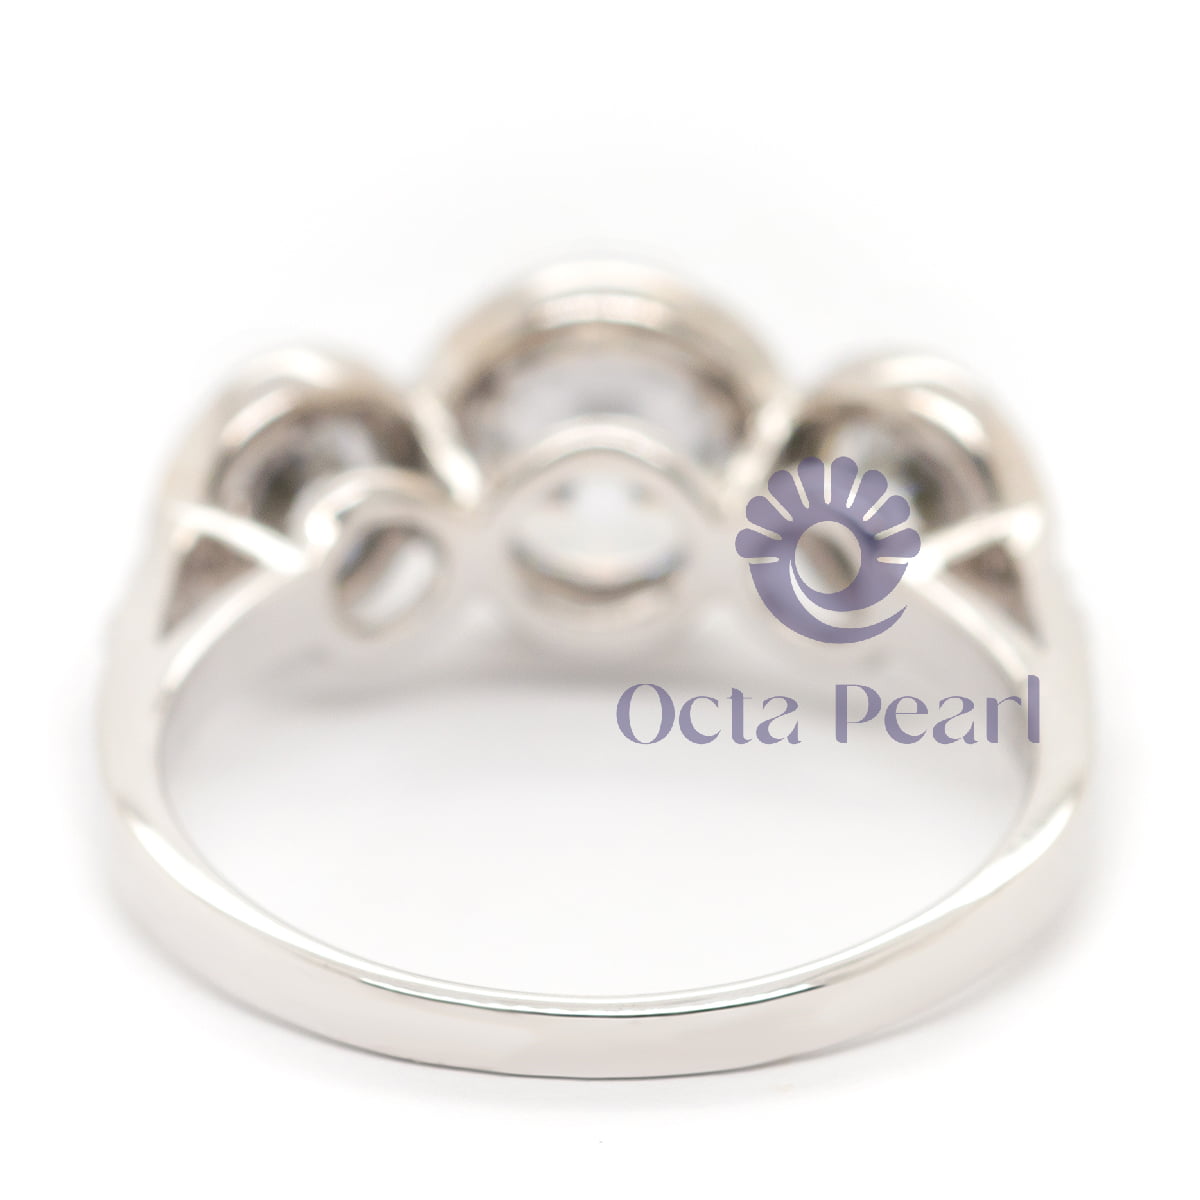 Unique Bezel Set Engagement Ring